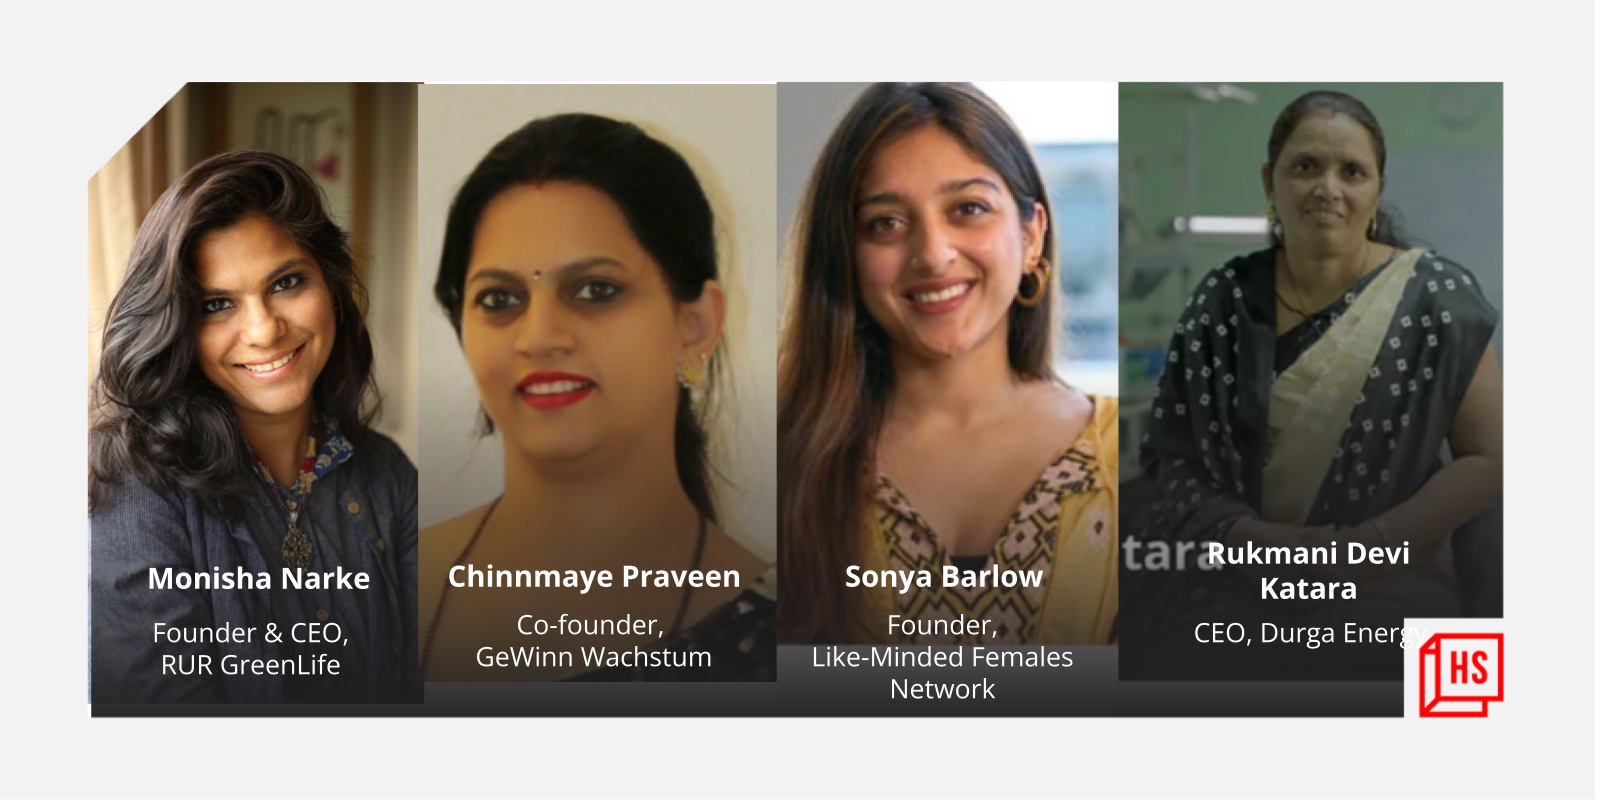 Meet 4 women using their entrepreneurial skills for social good
